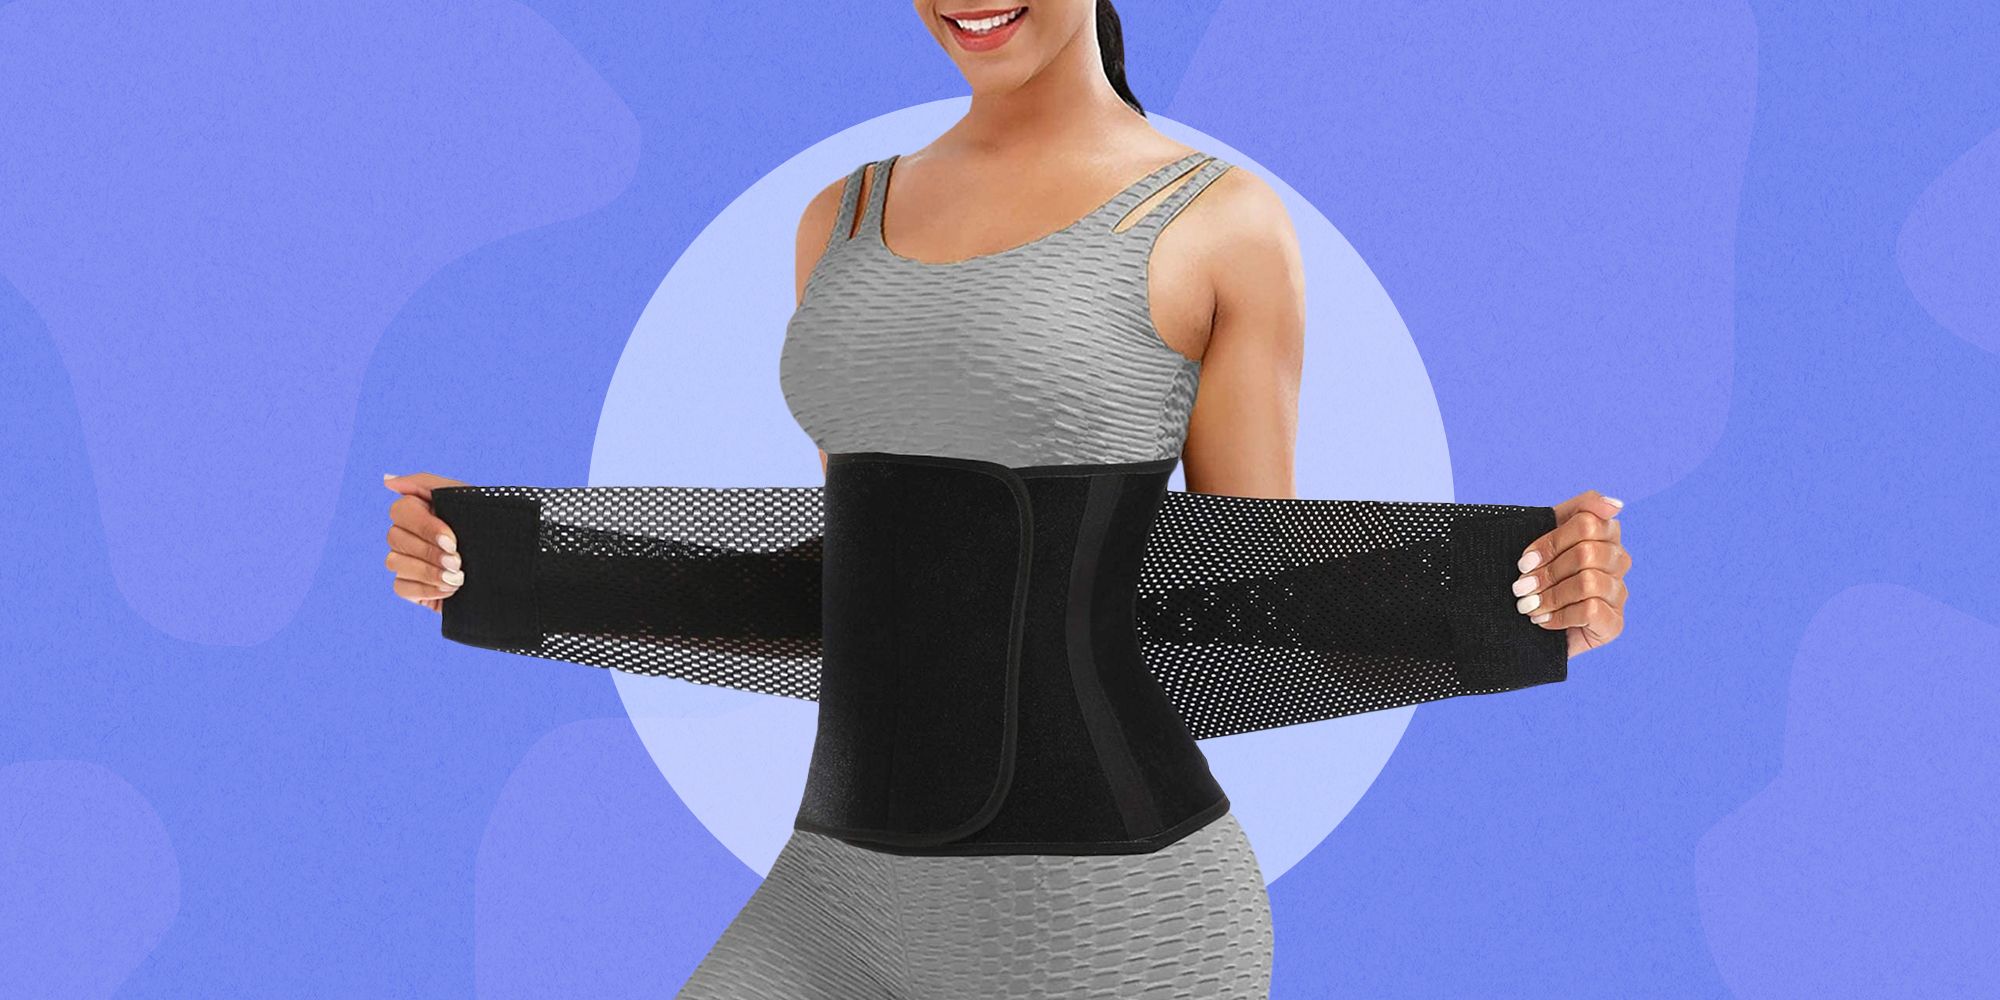  ChongErfei Waist Trainer Belt for Women & Man - Waist Trimmer Weight  Loss Ab Belt - Slimming Body Shaper(Black,Small) : Sports & Outdoors